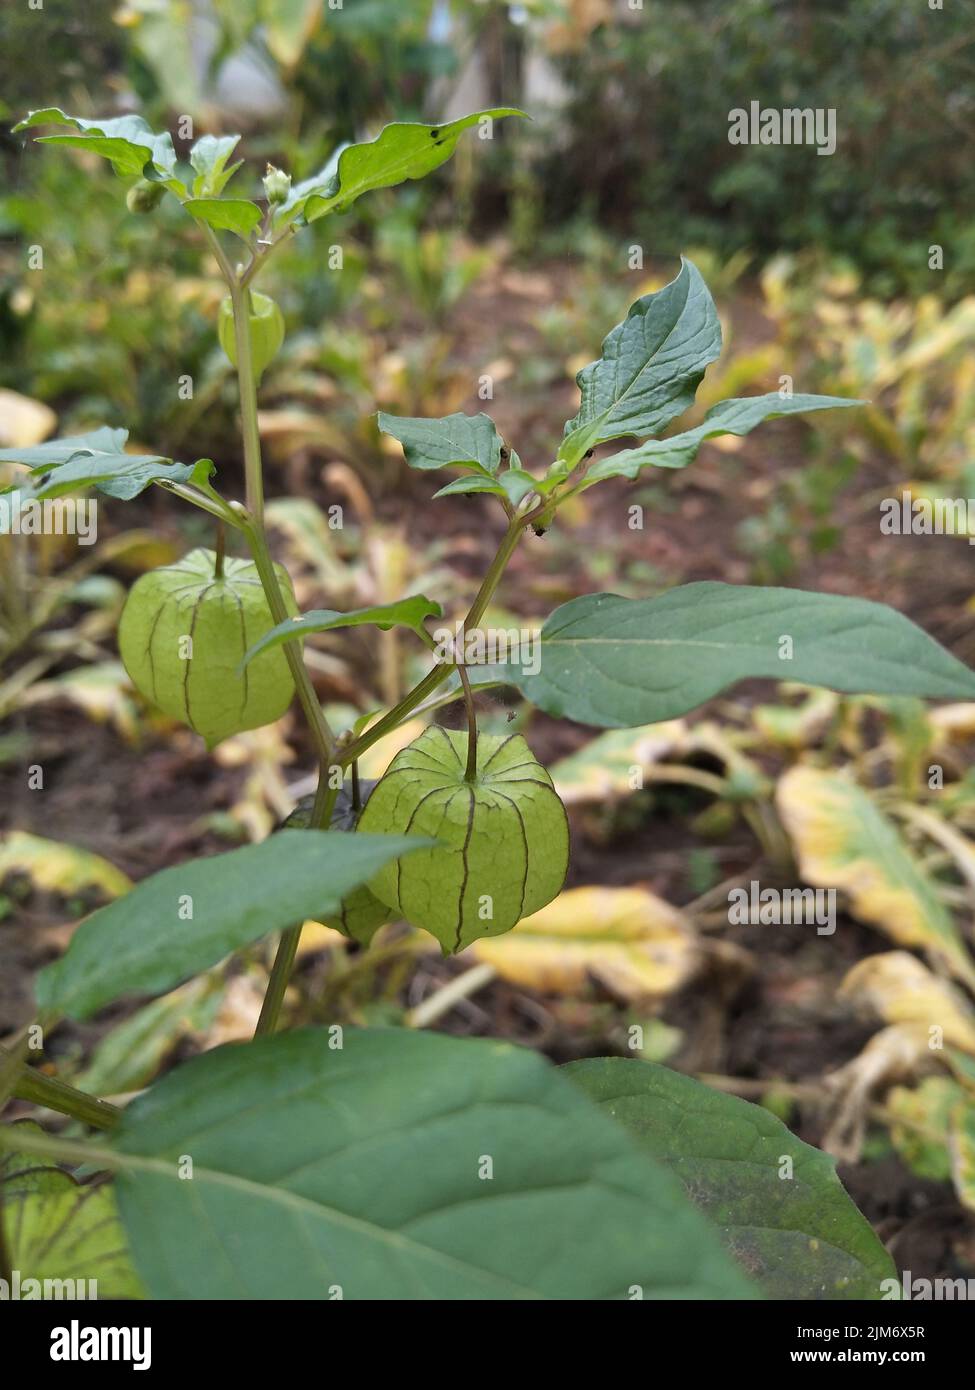 Ciplukan oder Physalis angulata, eine der Wildpflanzen, die verschiedene Krankheiten wirksam behandeln Stockfoto